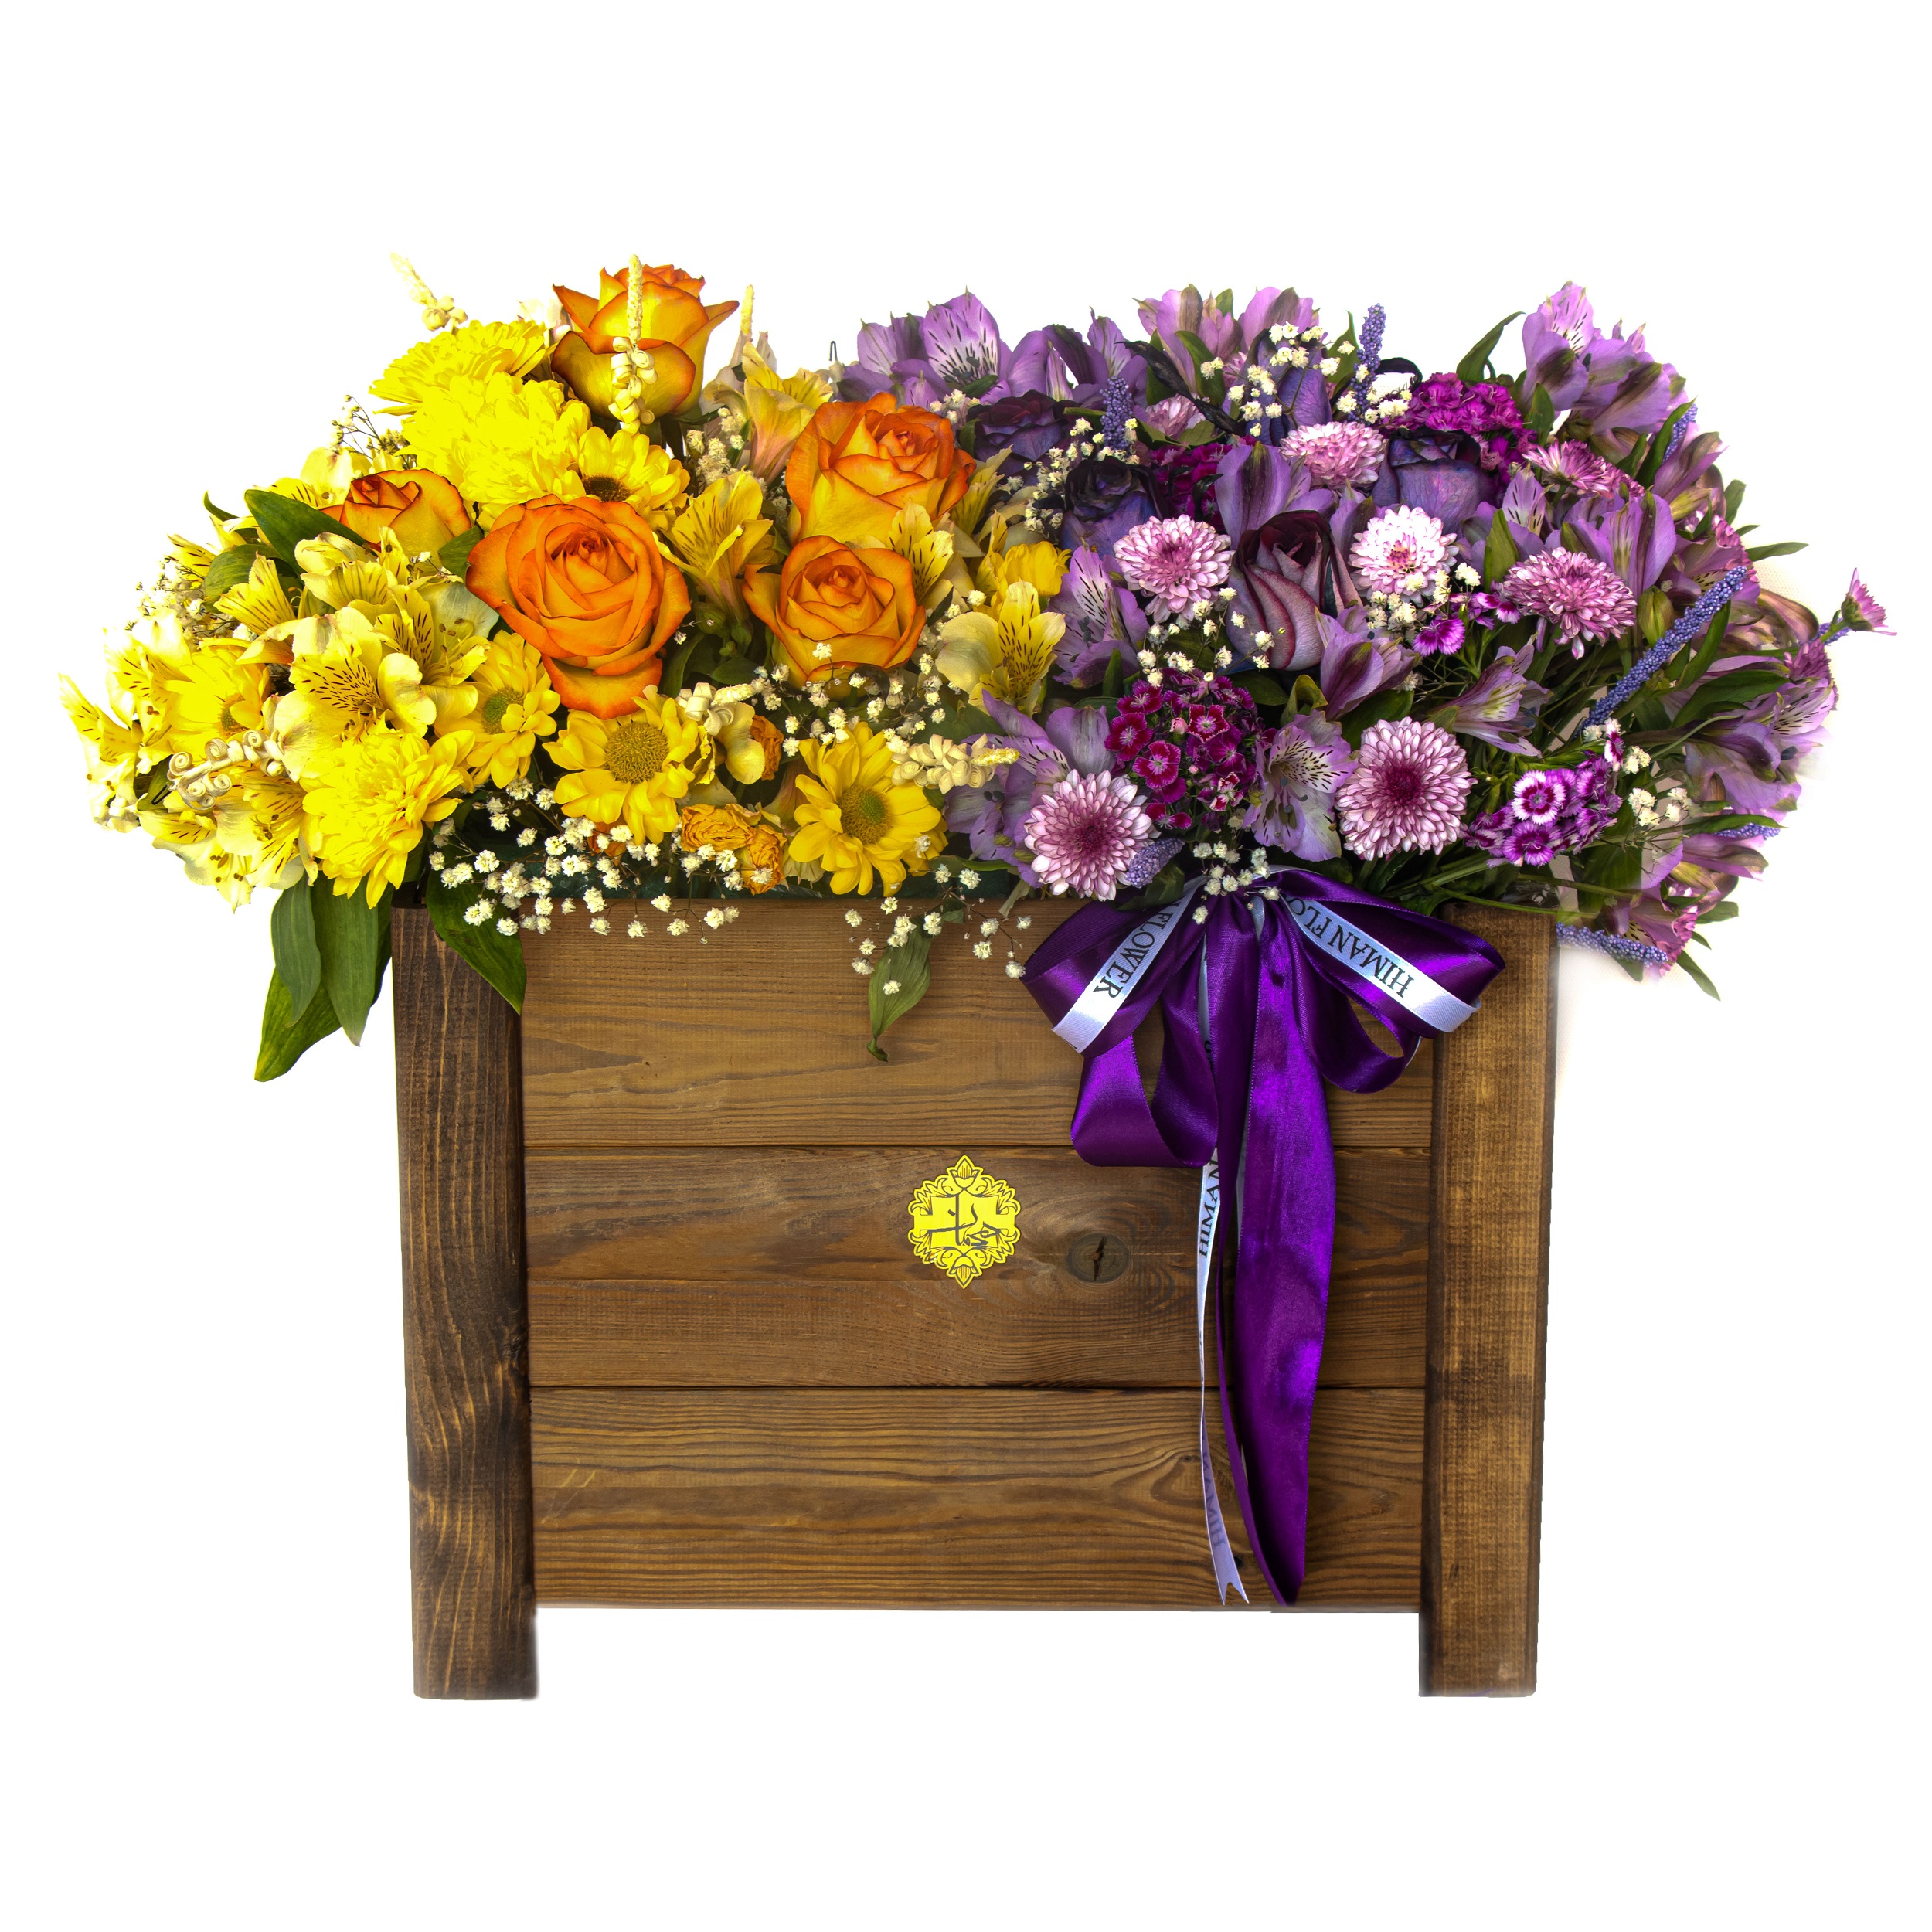 سبد گل طبیعی داودی مینیاتوری و رز و عروس و آلستر هیمان کد B204